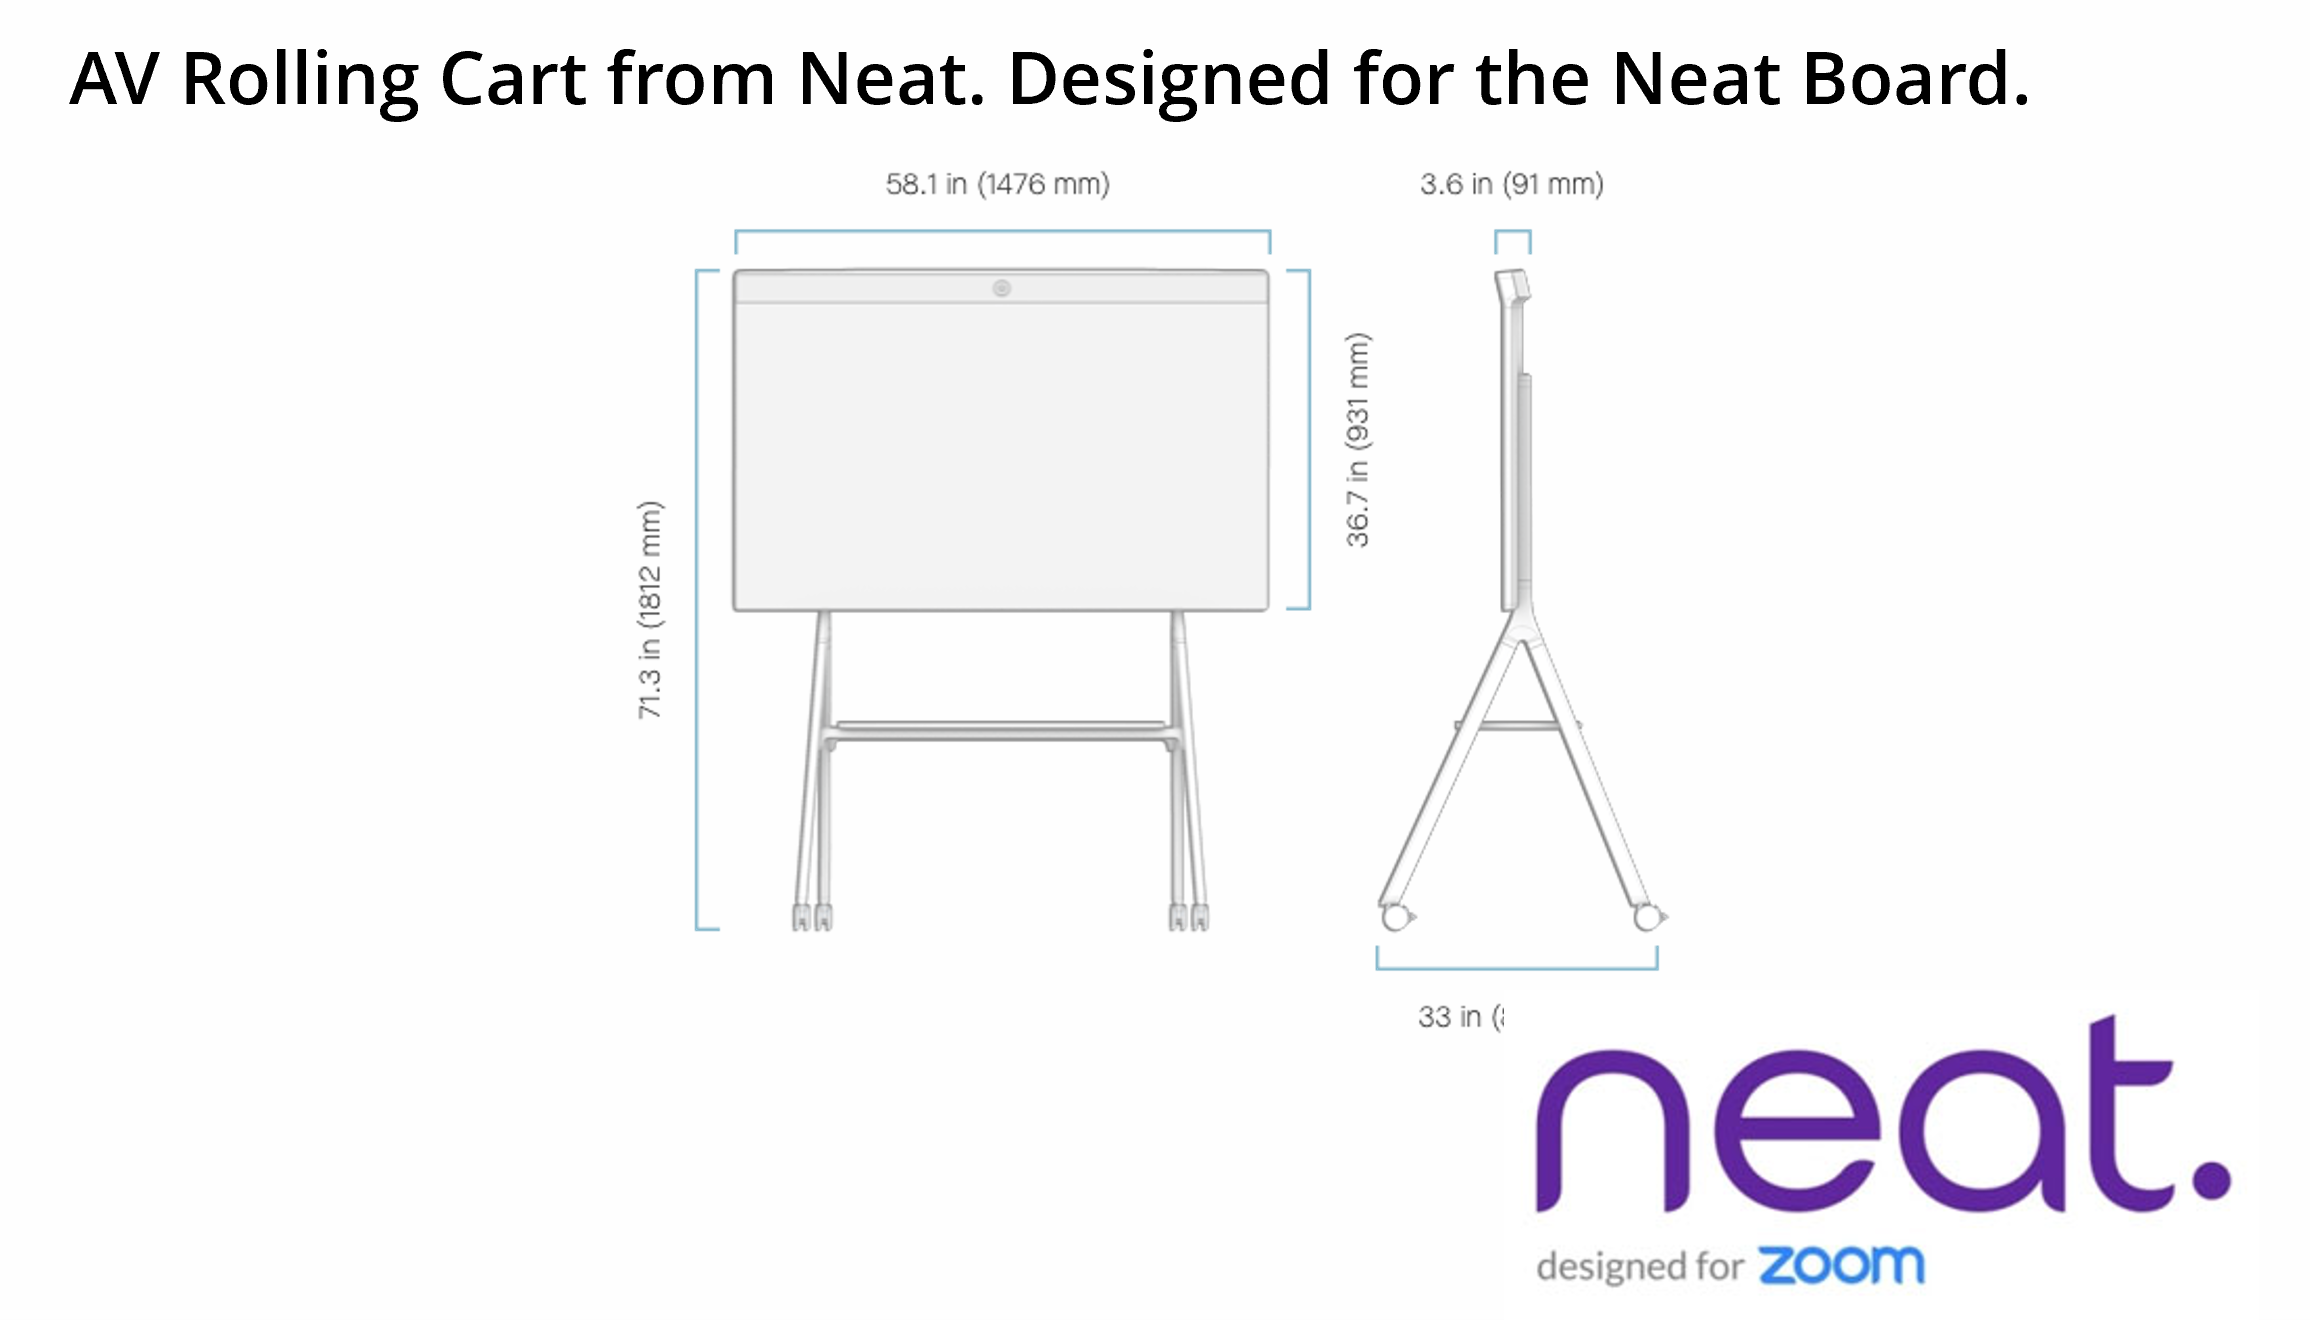 Neat AV Cart designed for the Neat Board for Zoom